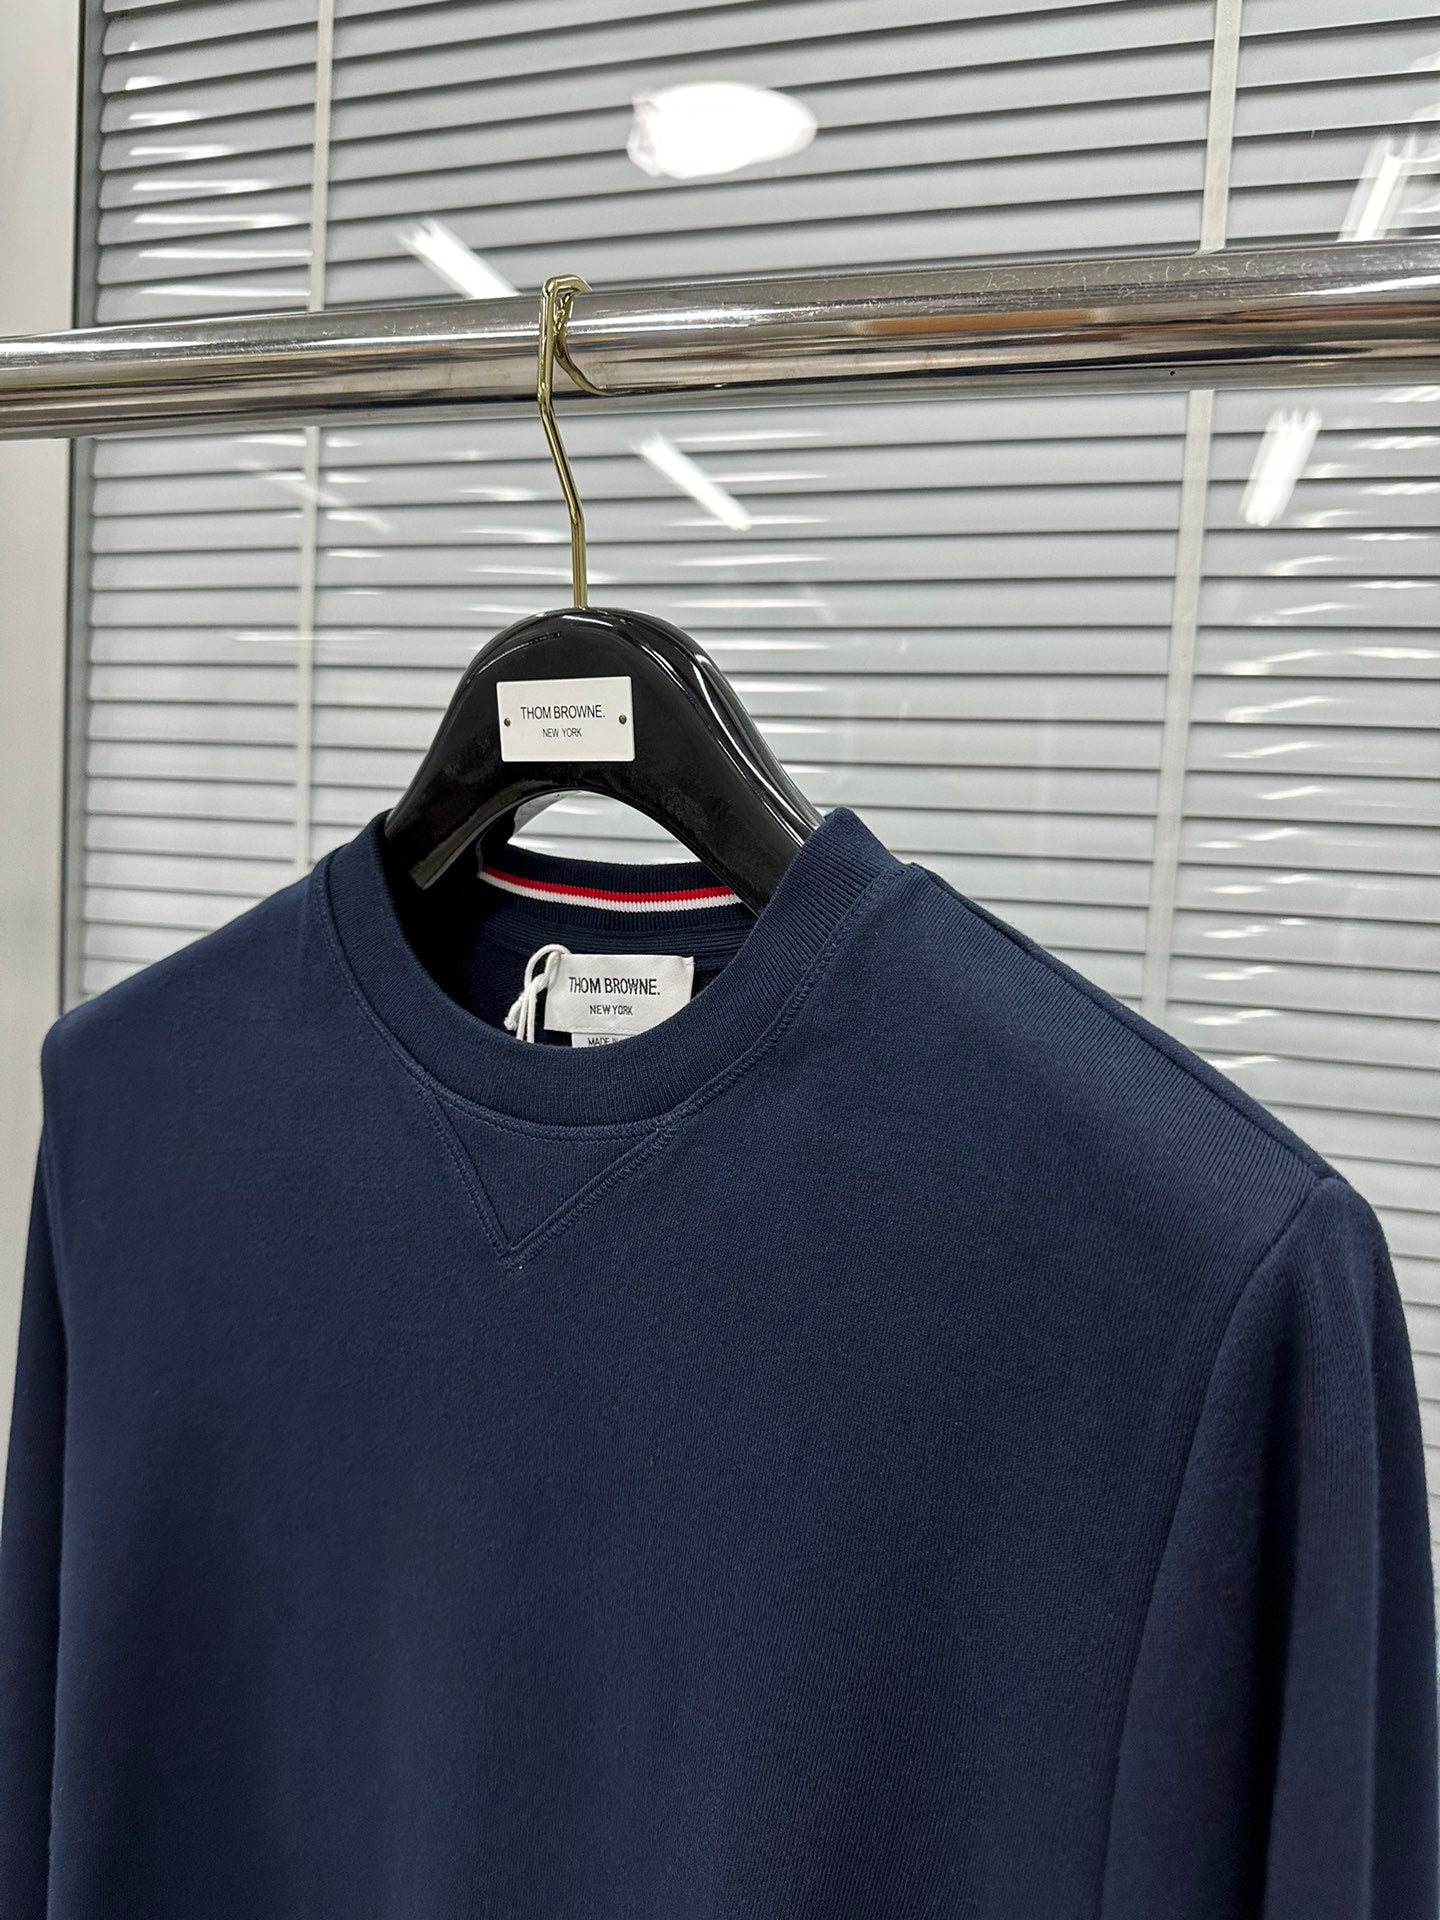 TJ / 톰브라운 클래식 맨투맨 스웨트 셔츠